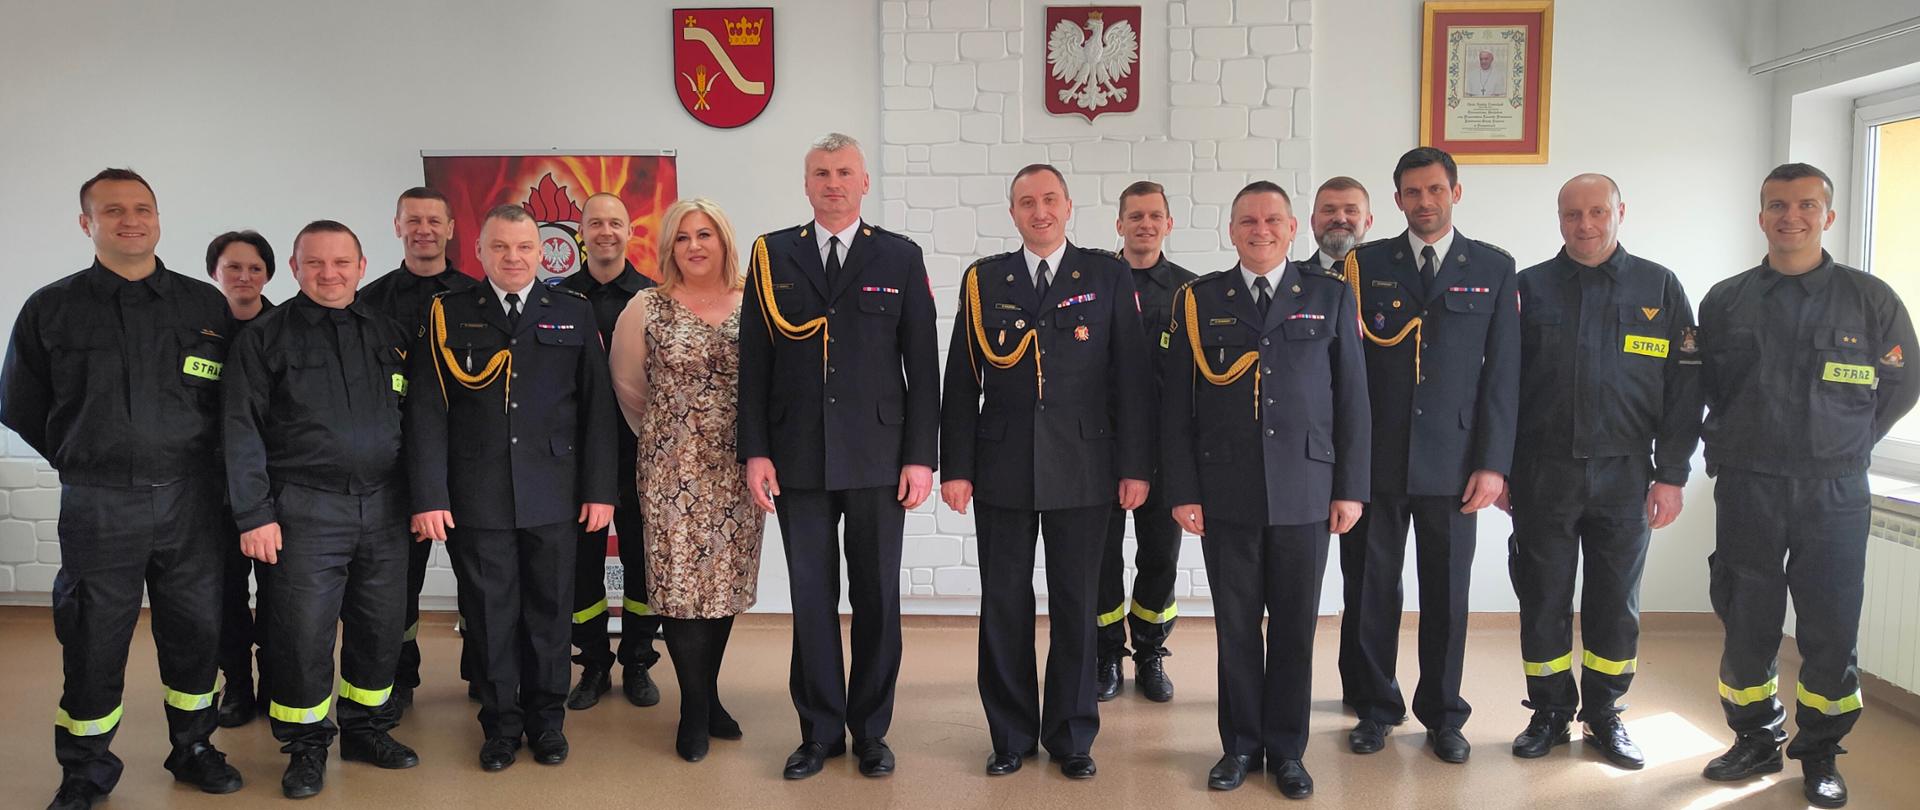 Pracownicy Komendy Powiatowej PSP w Proszowicach stoją w grupie, w tle godło państwowe